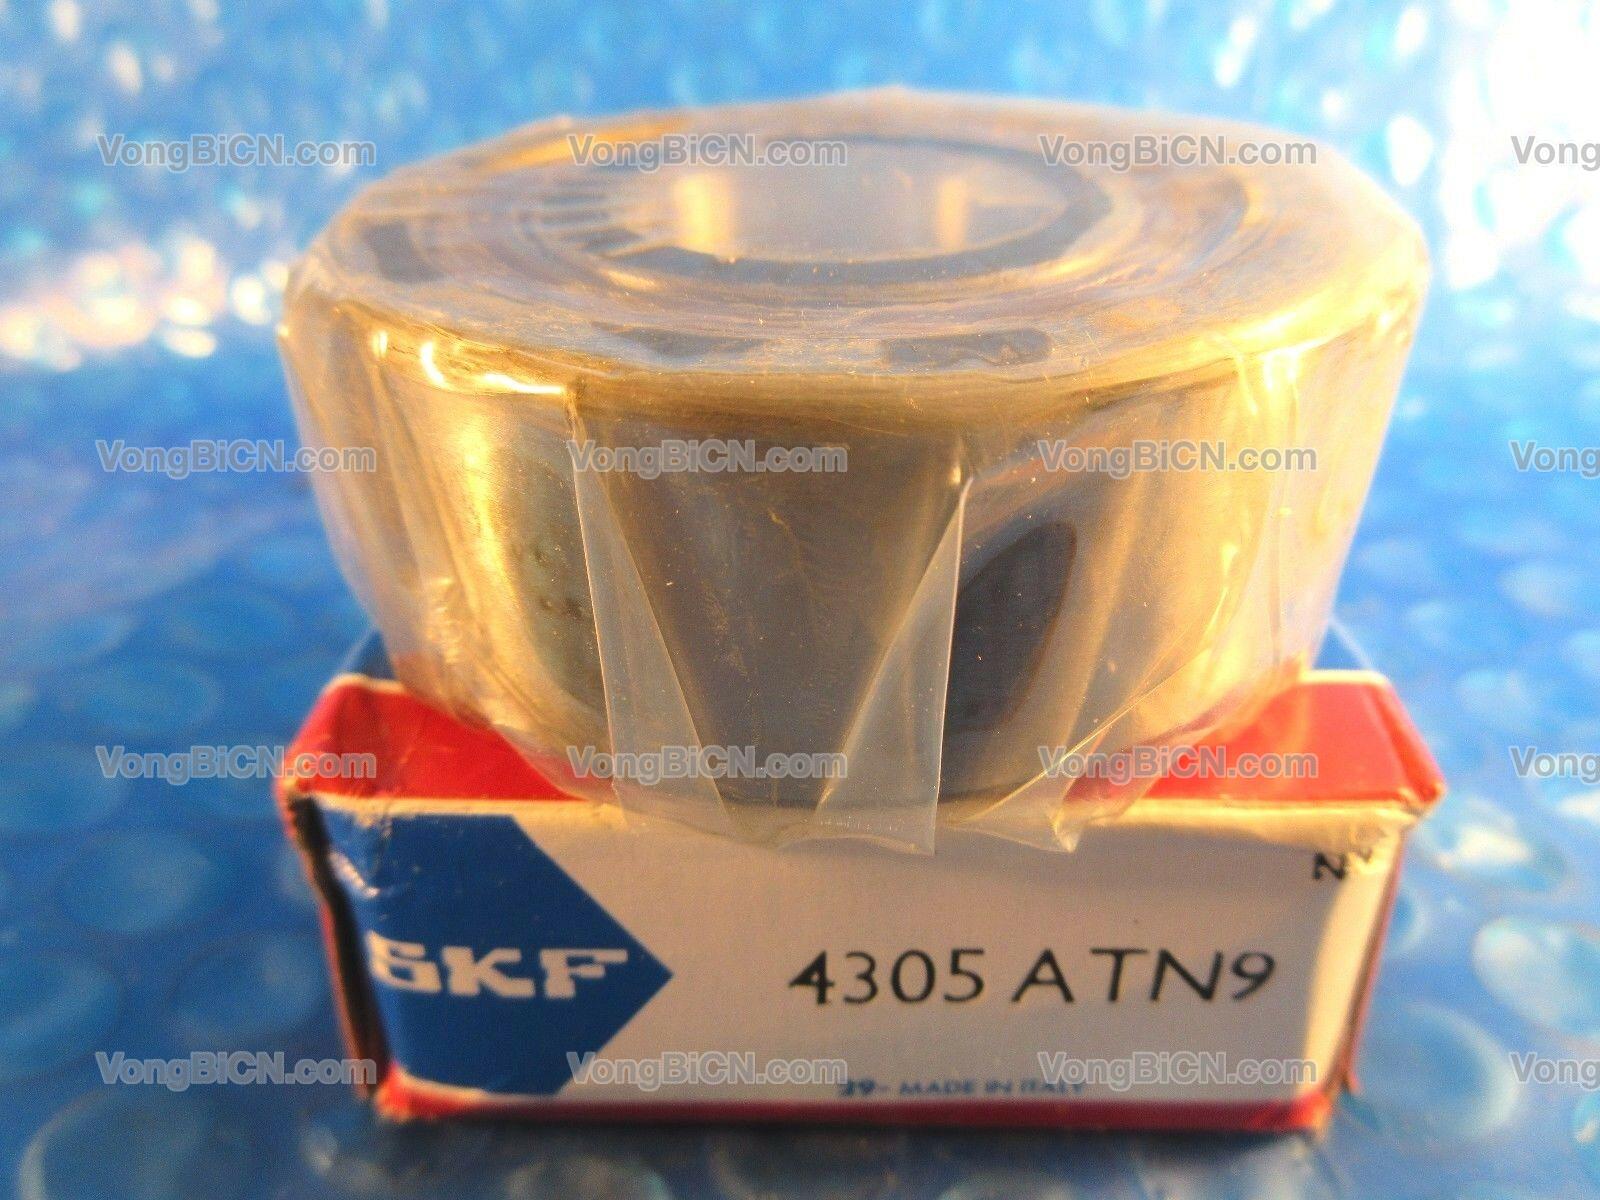 SKF 4305 ATN9